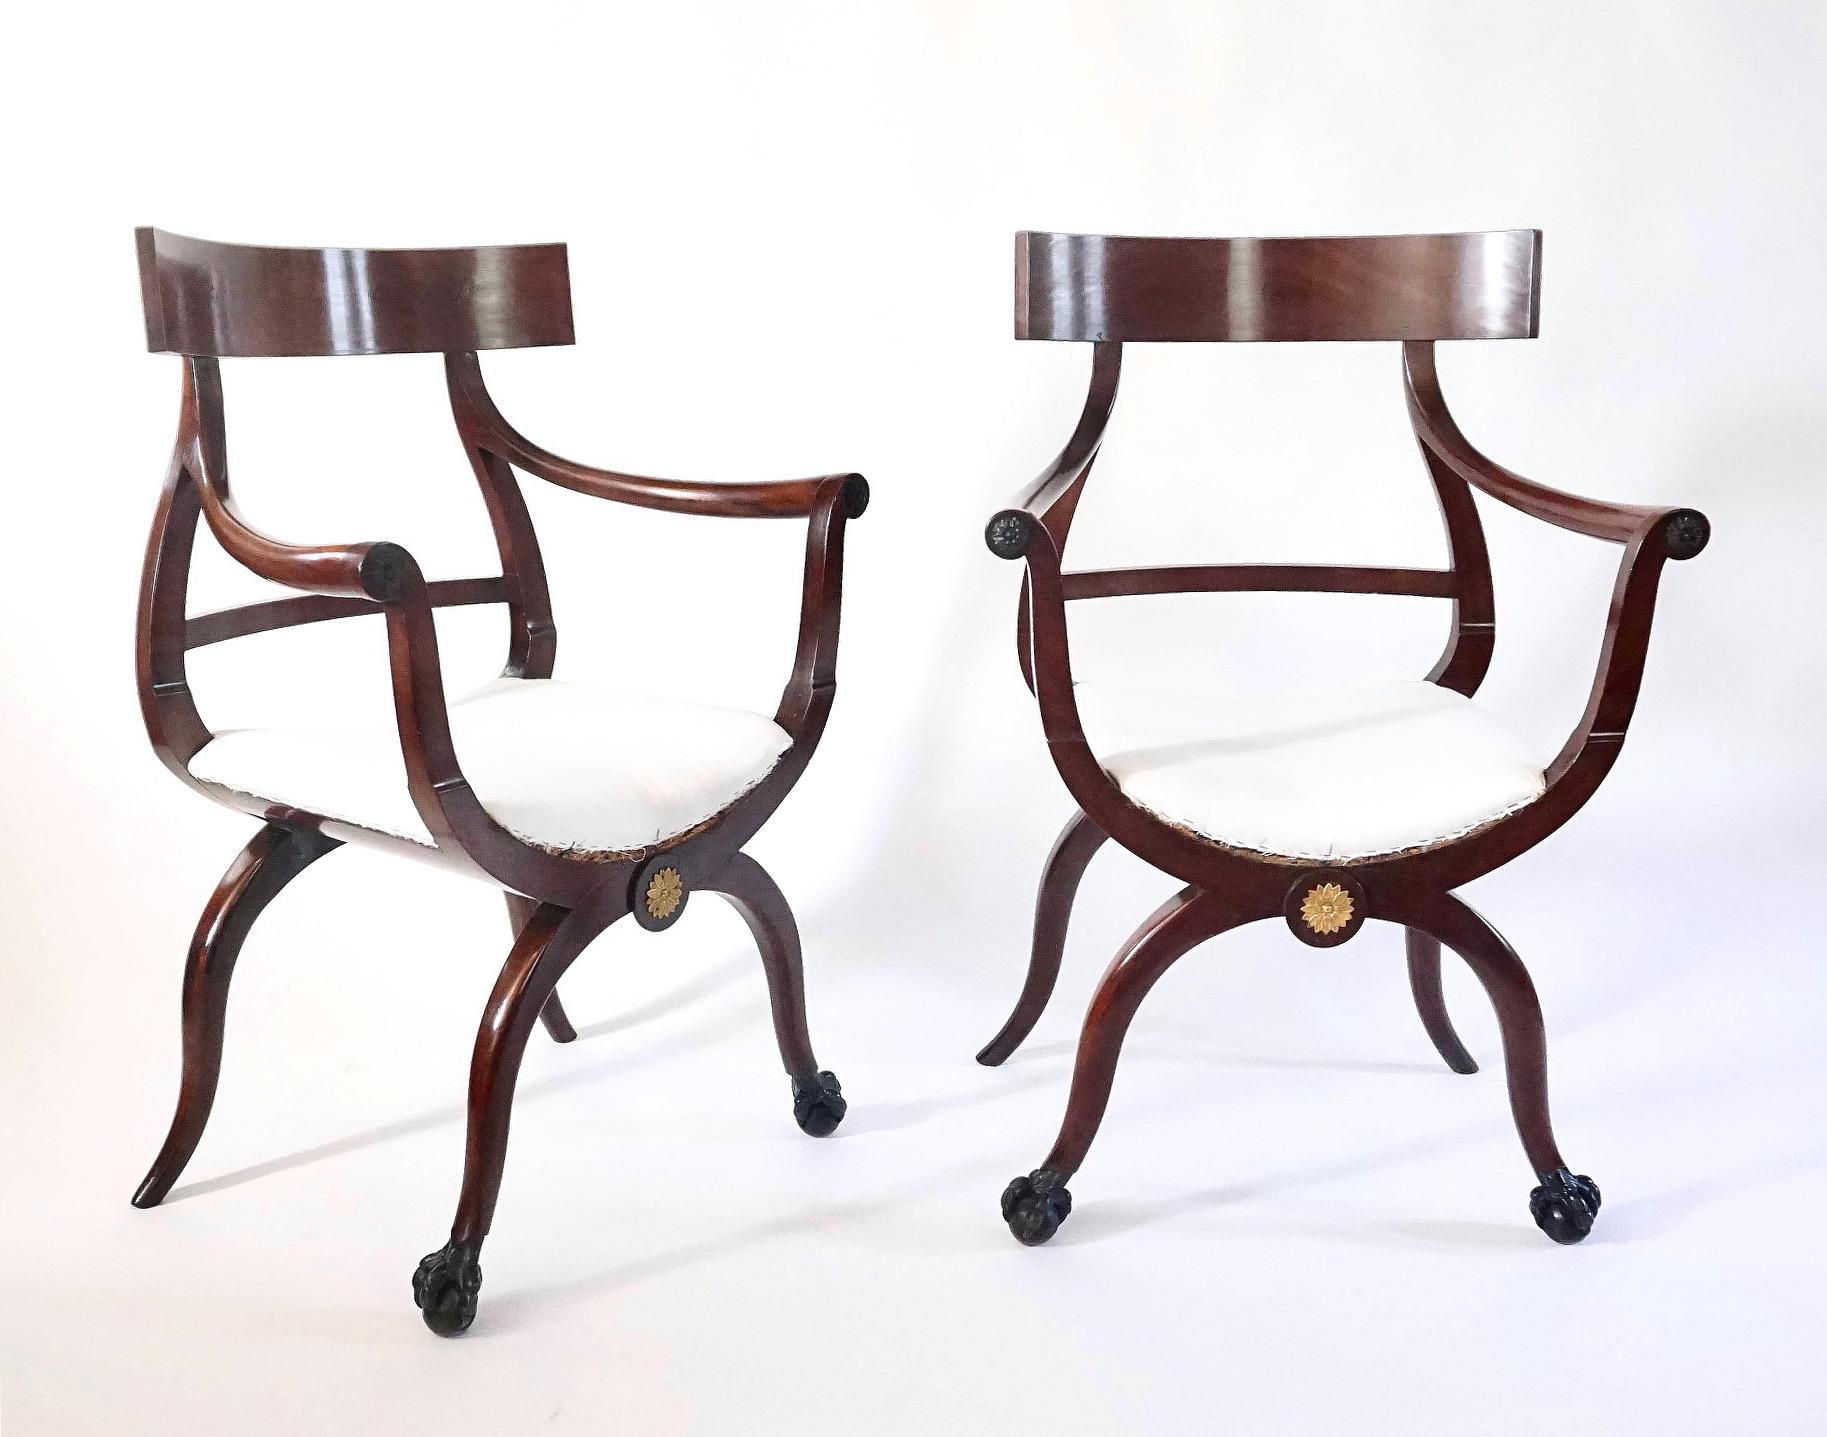 Eine unglaublich seltene und ungewöhnliche Paar um 1800 russischen oder baltischen Directoire-Stil Sessel oder fauteuils von beiden klismos und Curule Variante Form, die massiven Mahagoni-Rahmen vergoldet-Metall-Rosette montiert mit gepolsterten